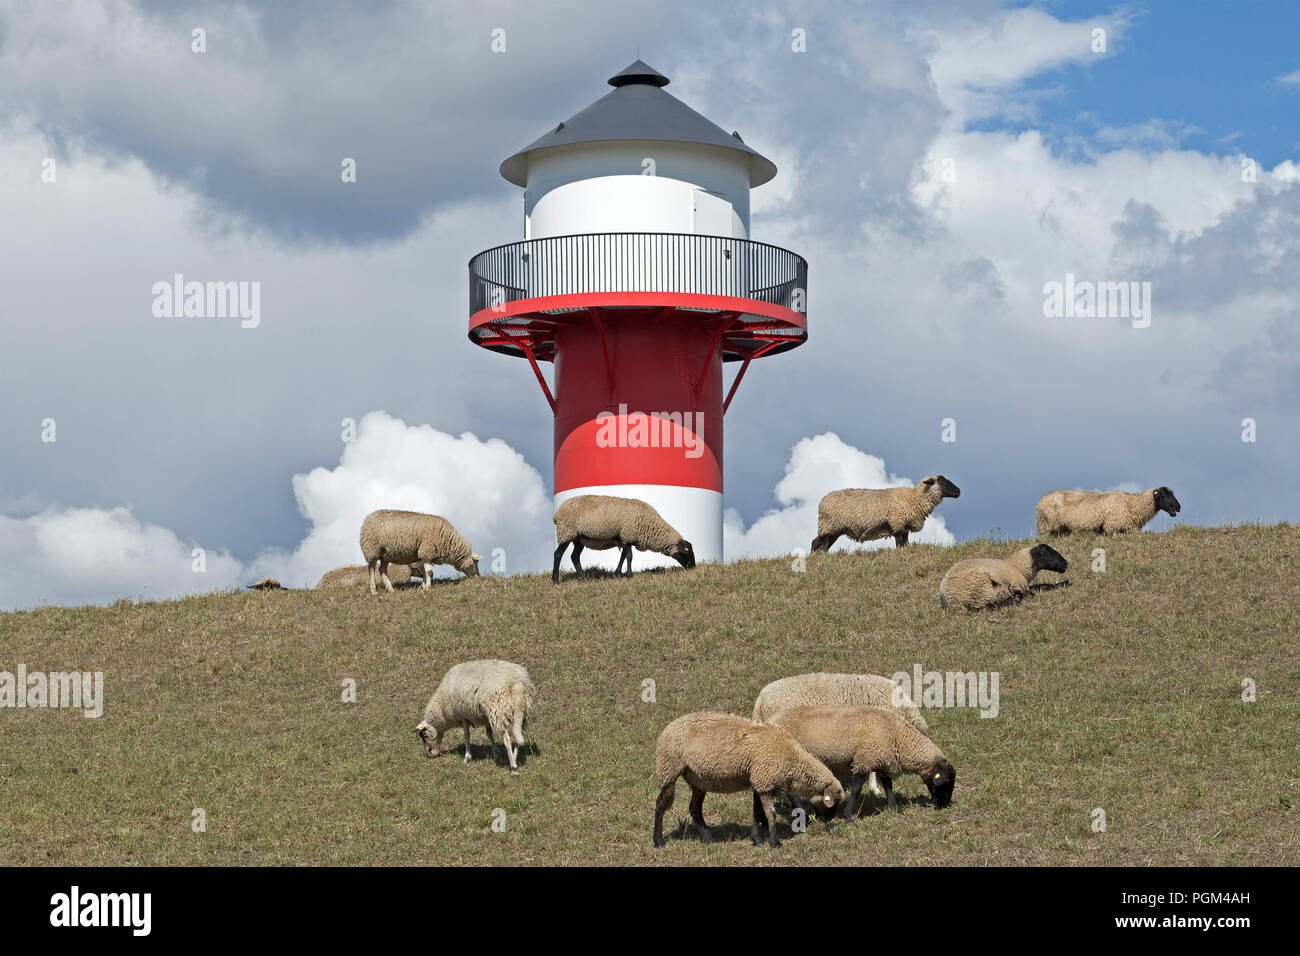 Pecore nella parte anteriore del faro, Luehe, Altes Land (vecchio paese), Bassa Sassonia, Germania Foto Stock